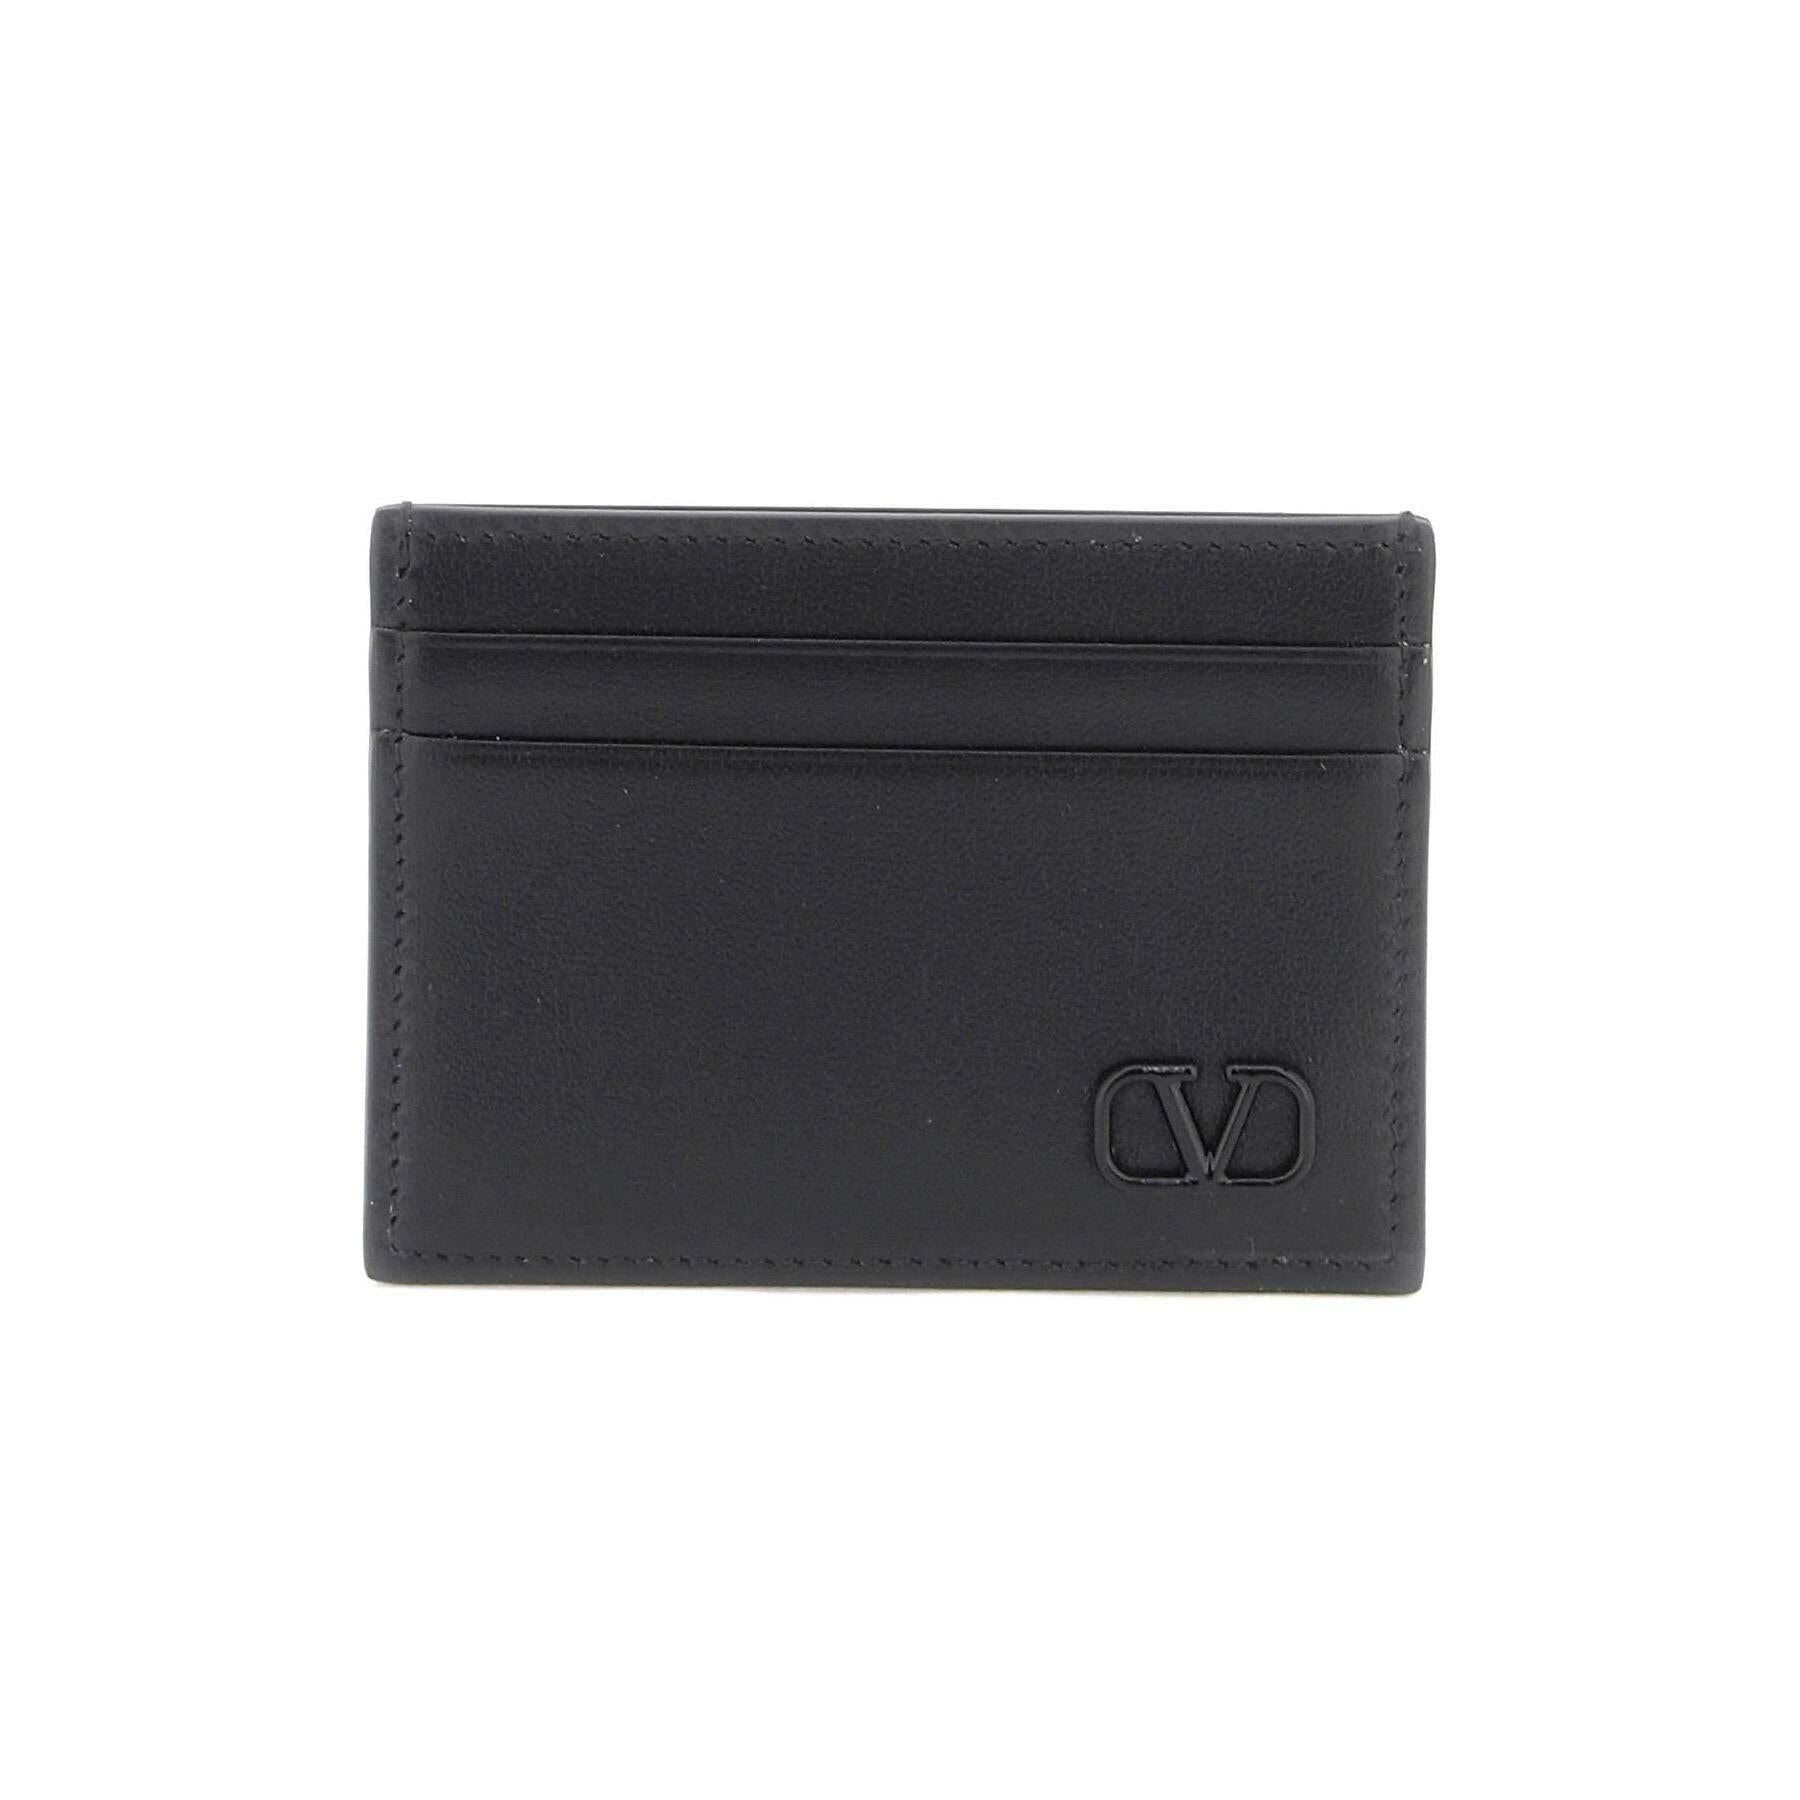 VLogo Signature Leather Cardholder